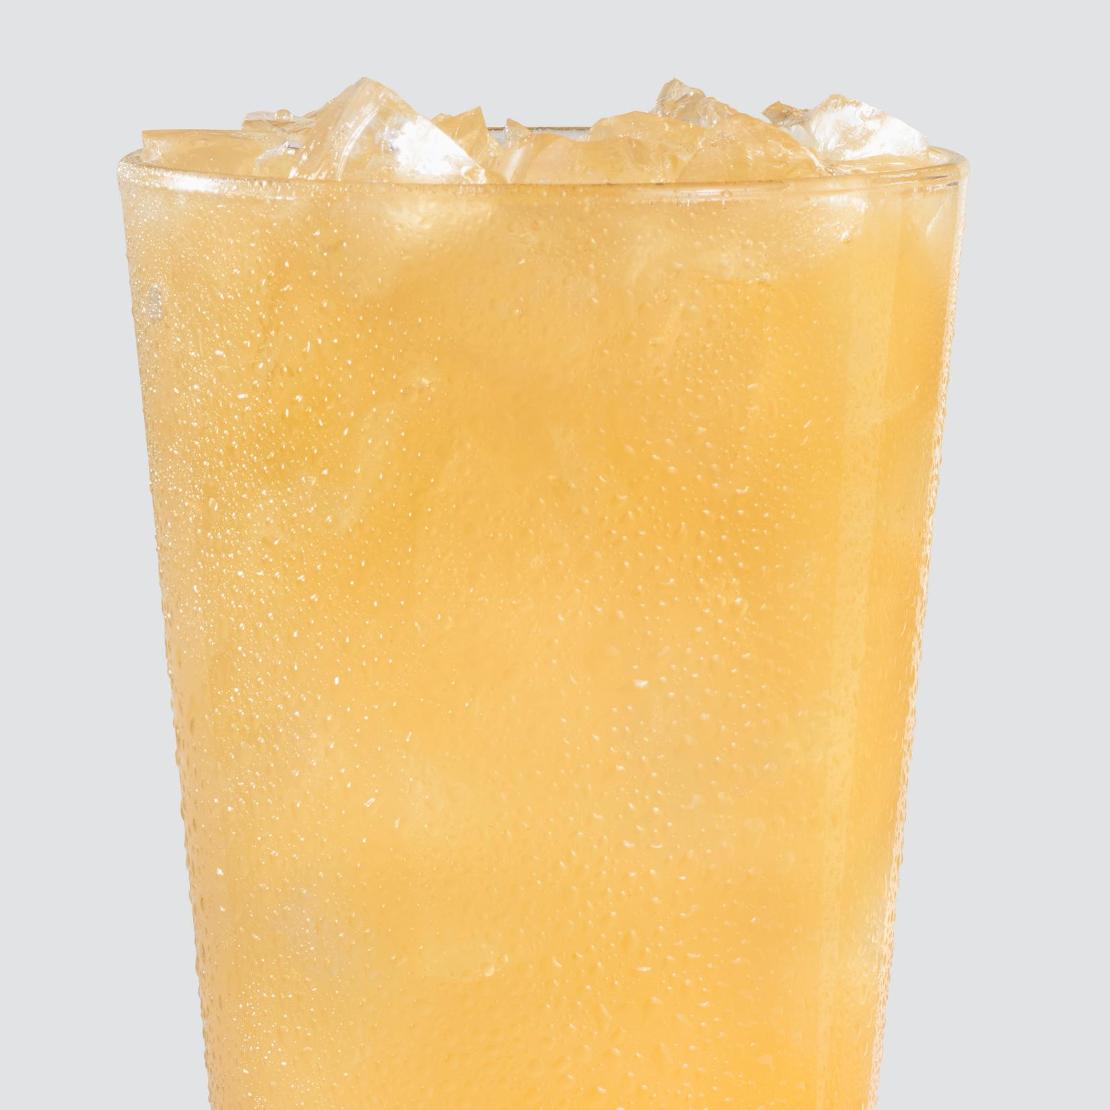 order online - Pineapple Mango Lemonade from Wendy's on bringmethat.com